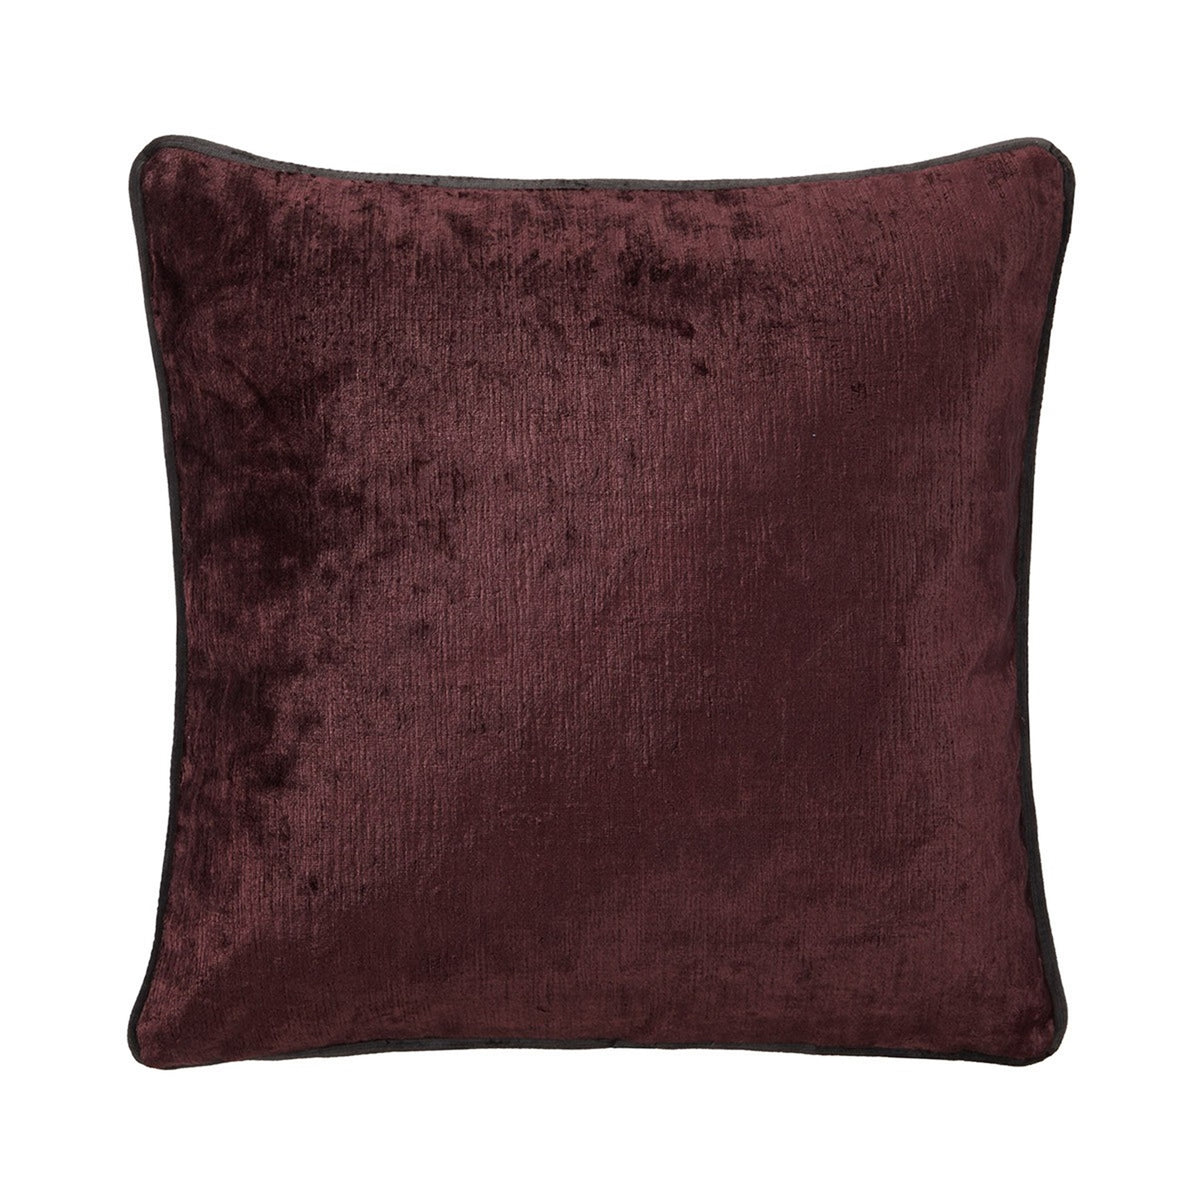 Silo Image of Yves Delorme Iosis Boromee Square Decorative Pillow in Grenache Color